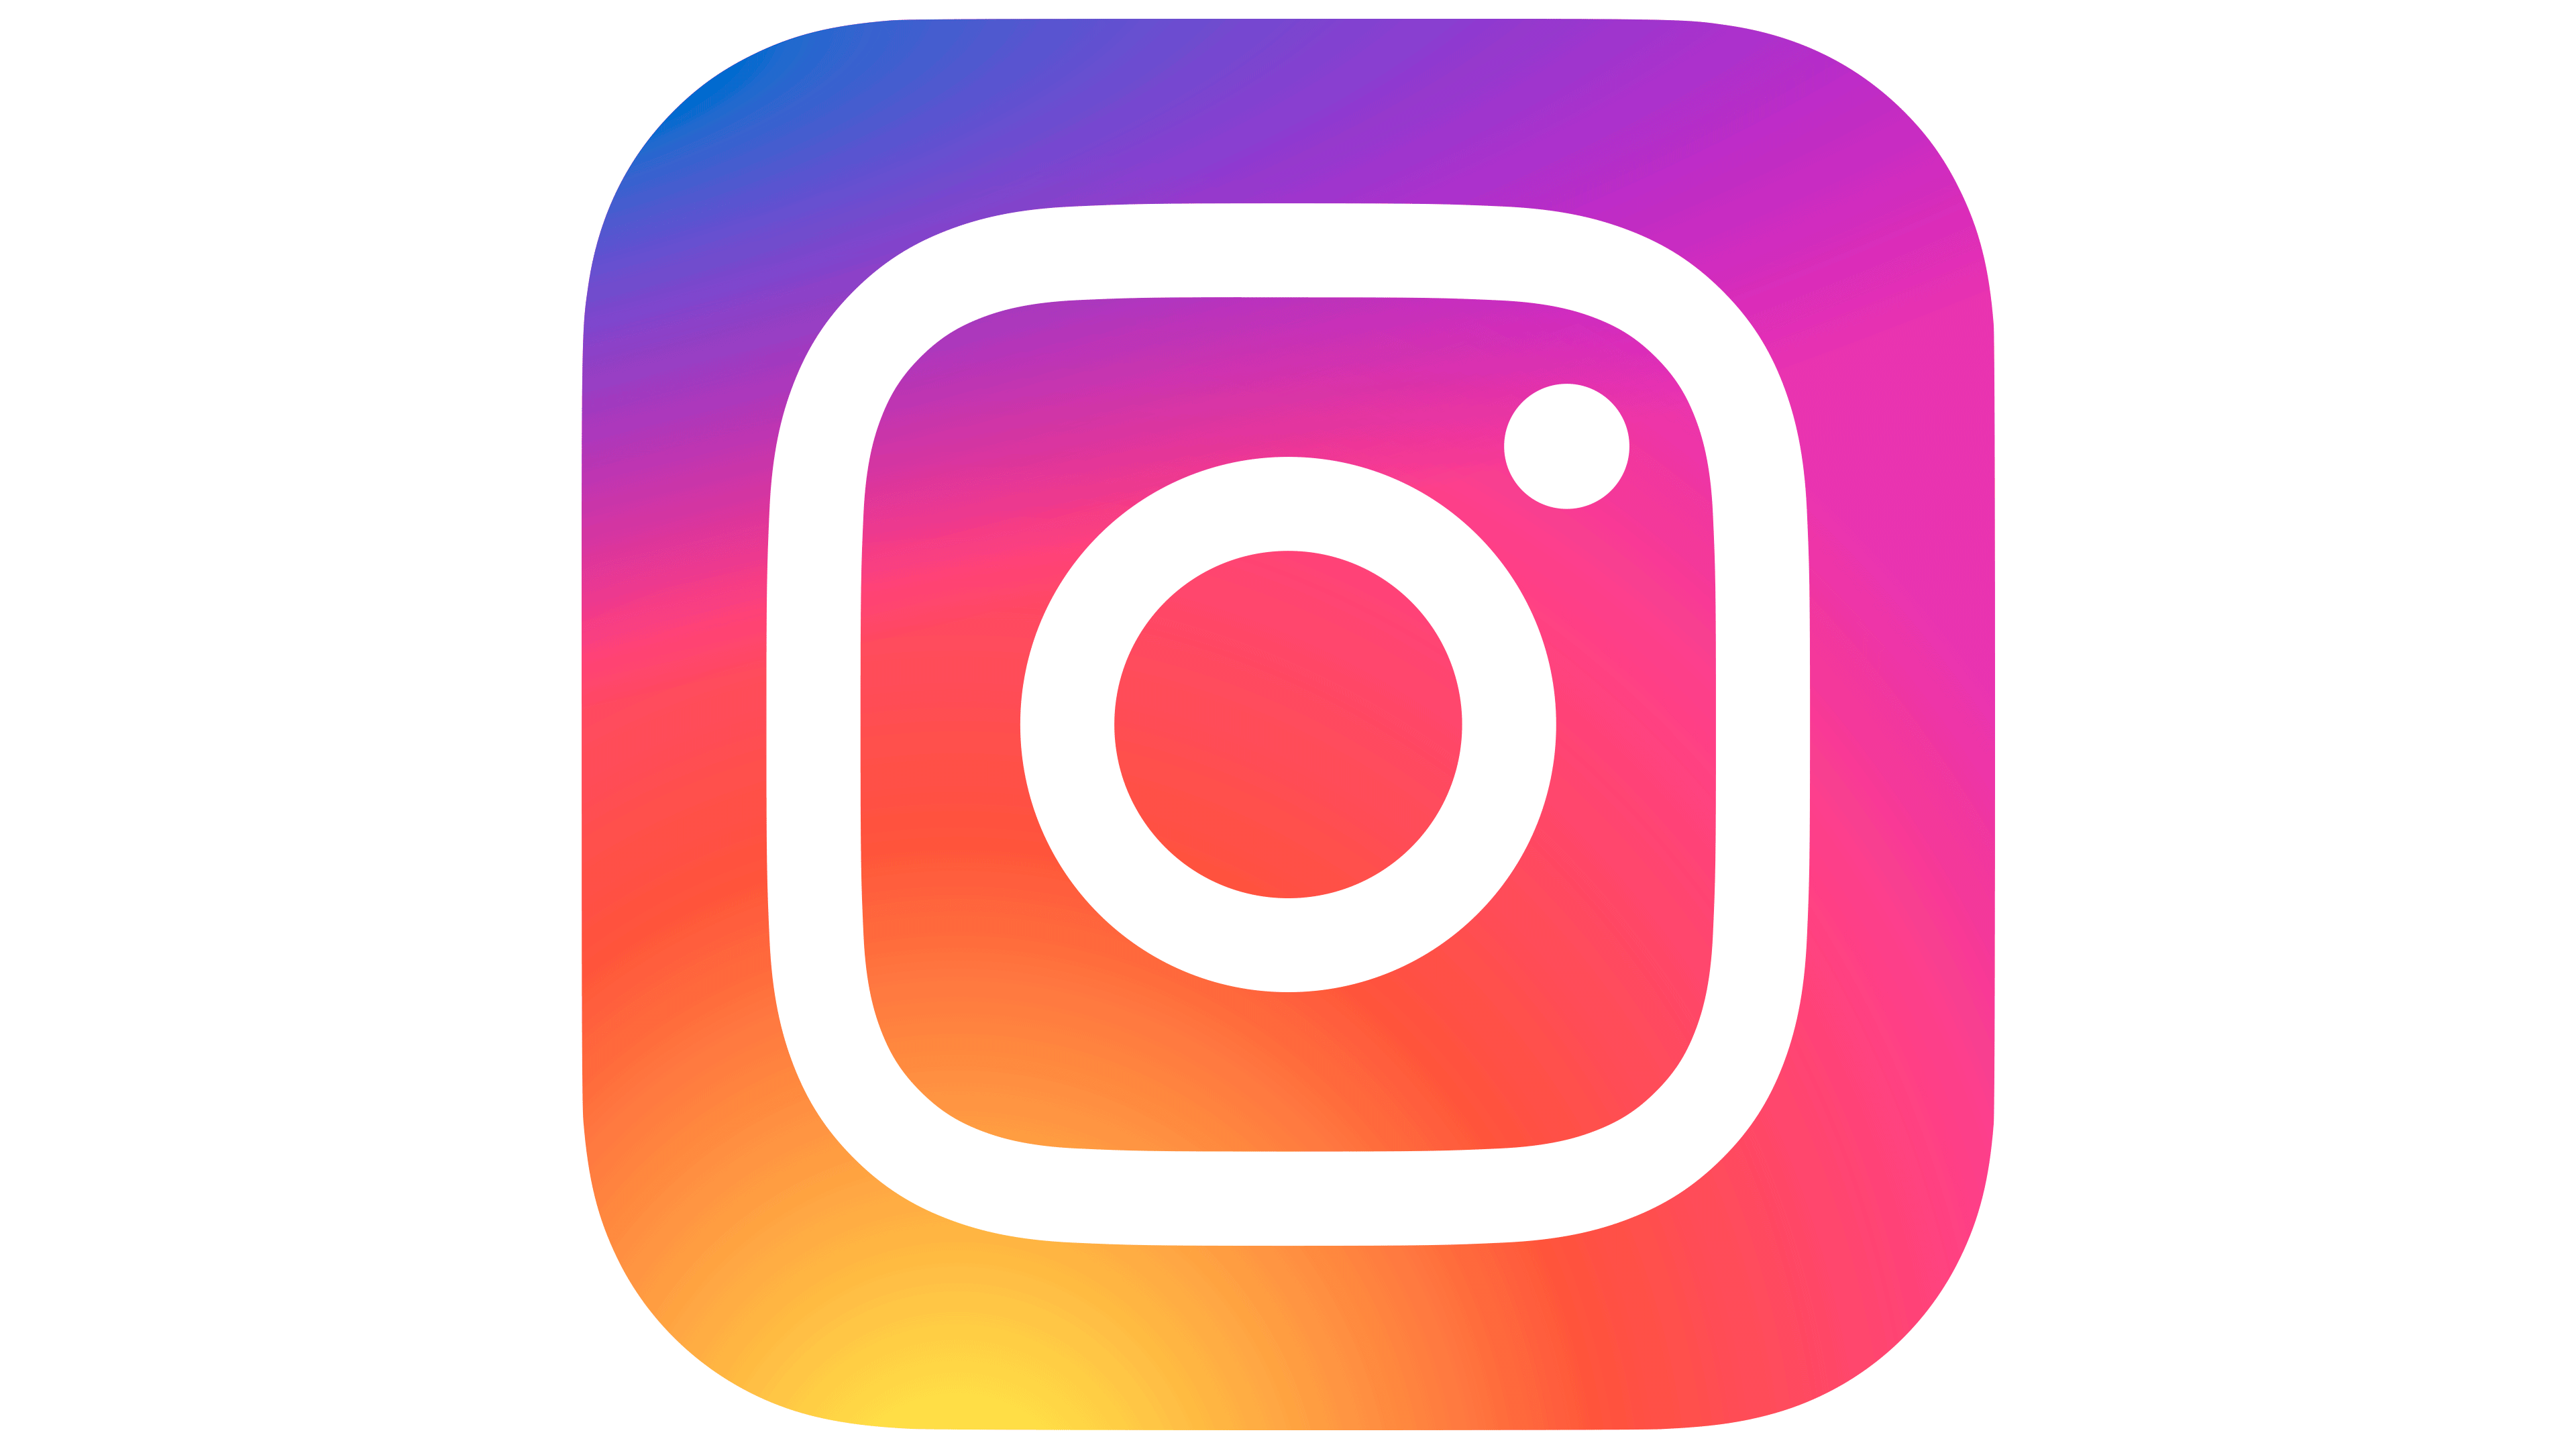 InstagramはTikTokスタイルのビデオホームフィードを取得しています